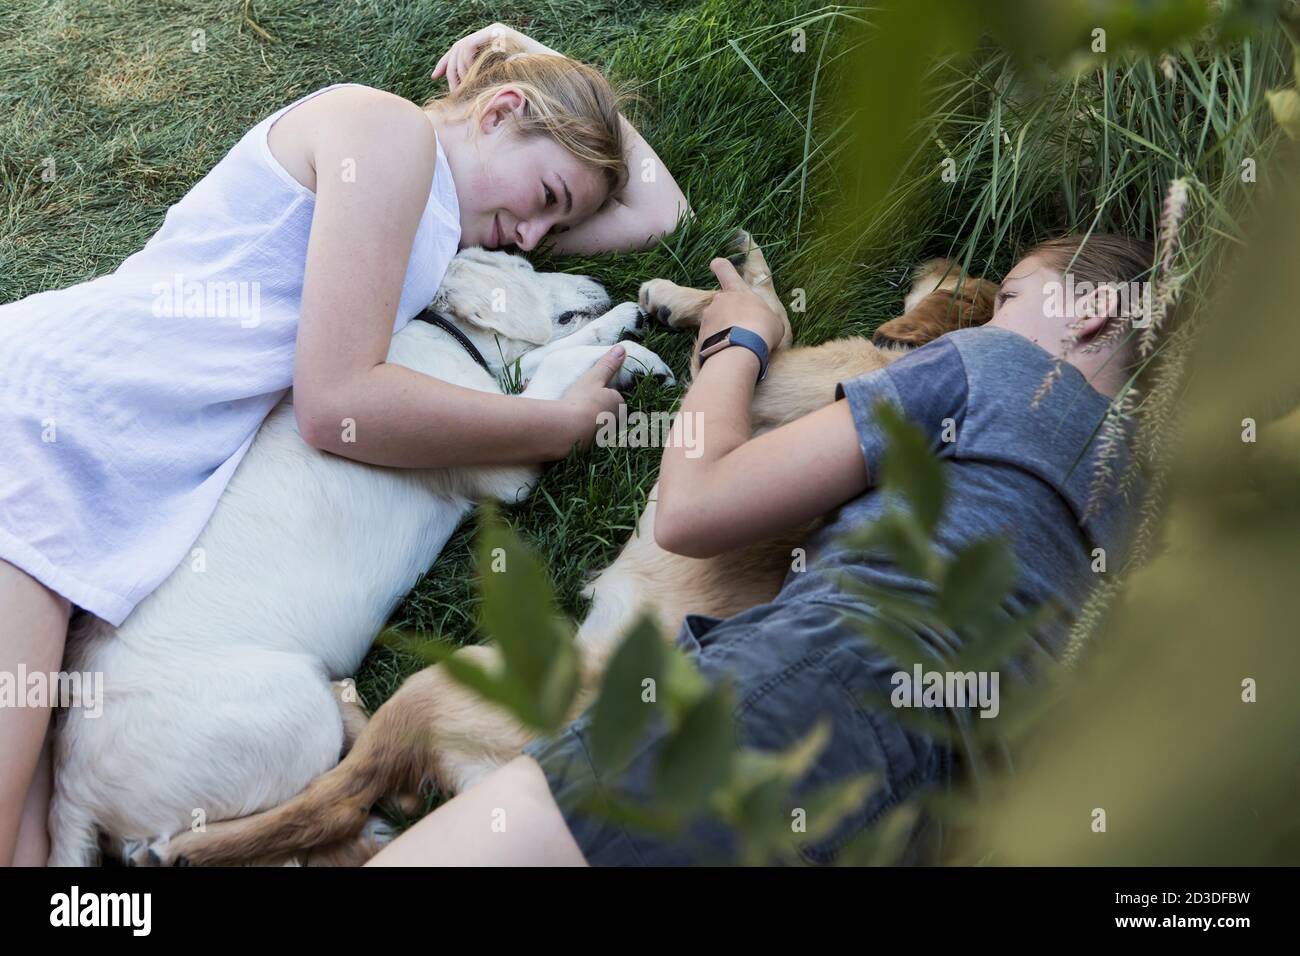 Deux adolescentes qui s'étreignent sur la pelouse et embrasent leurs chiens Golden Retriever. Banque D'Images